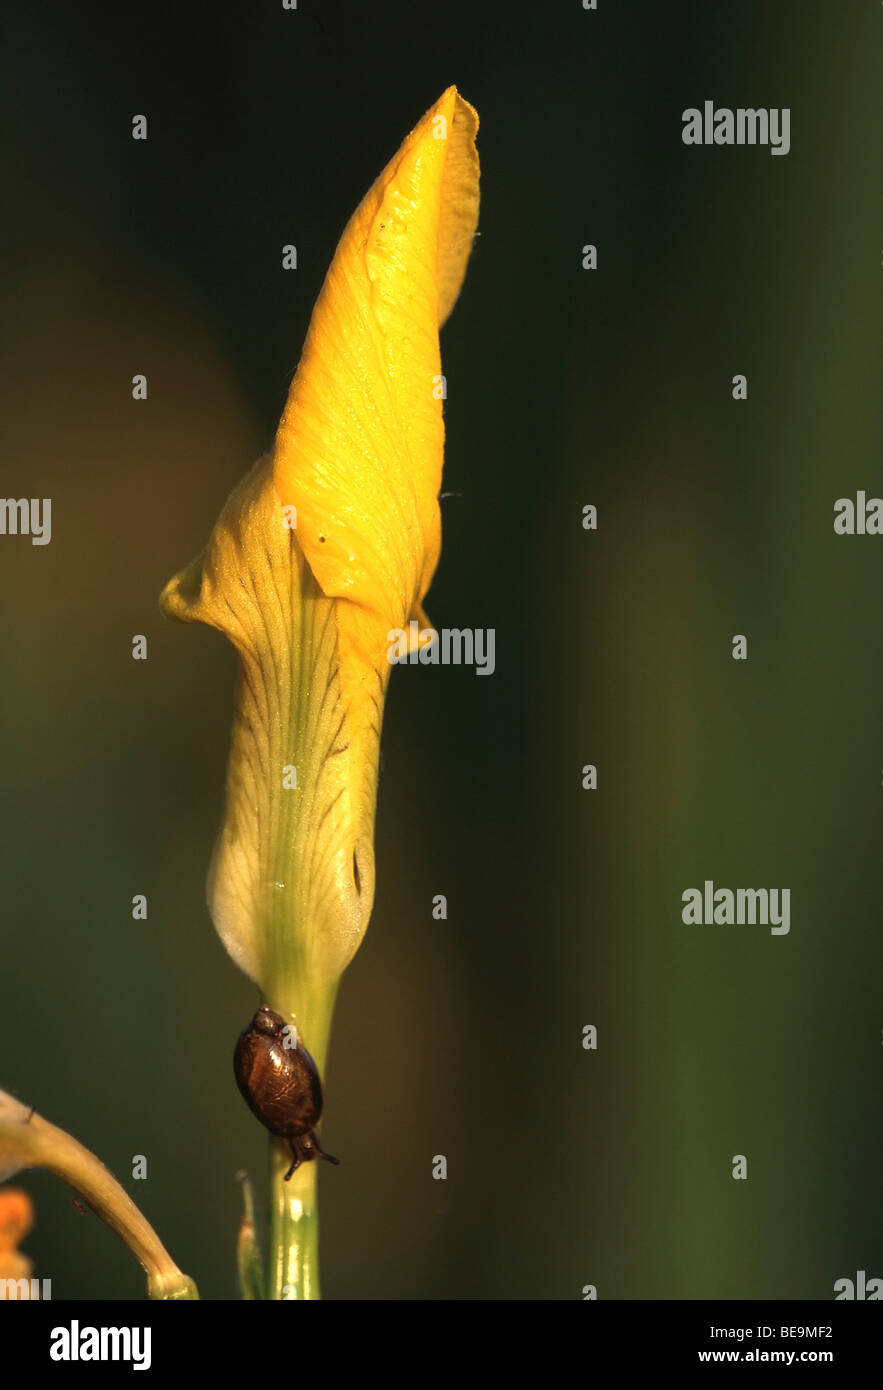 Bloem van Gele lis (Iris pseudacorus), Belgi Fleur d'iris jaune (Iris pseudacorus), Belgique Banque D'Images